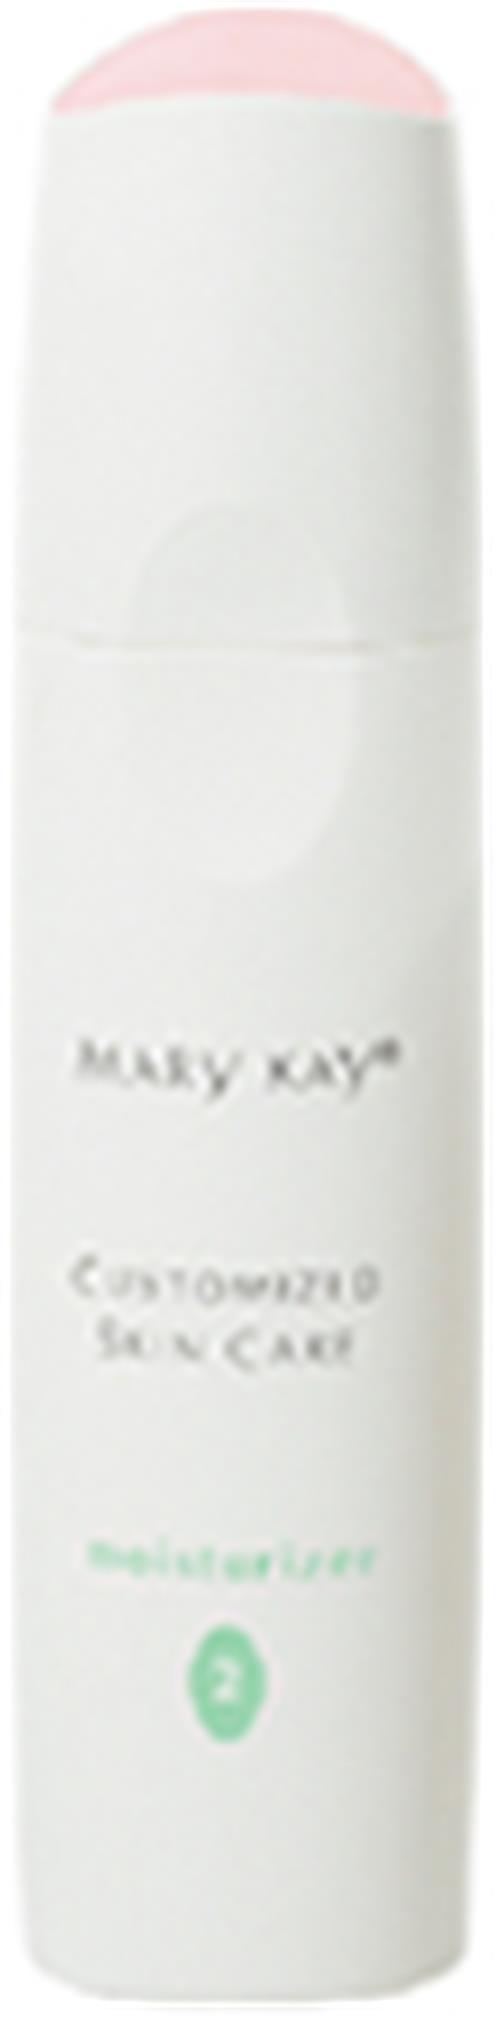 玫琳凯MaryKay化妆品水分平衡乳液